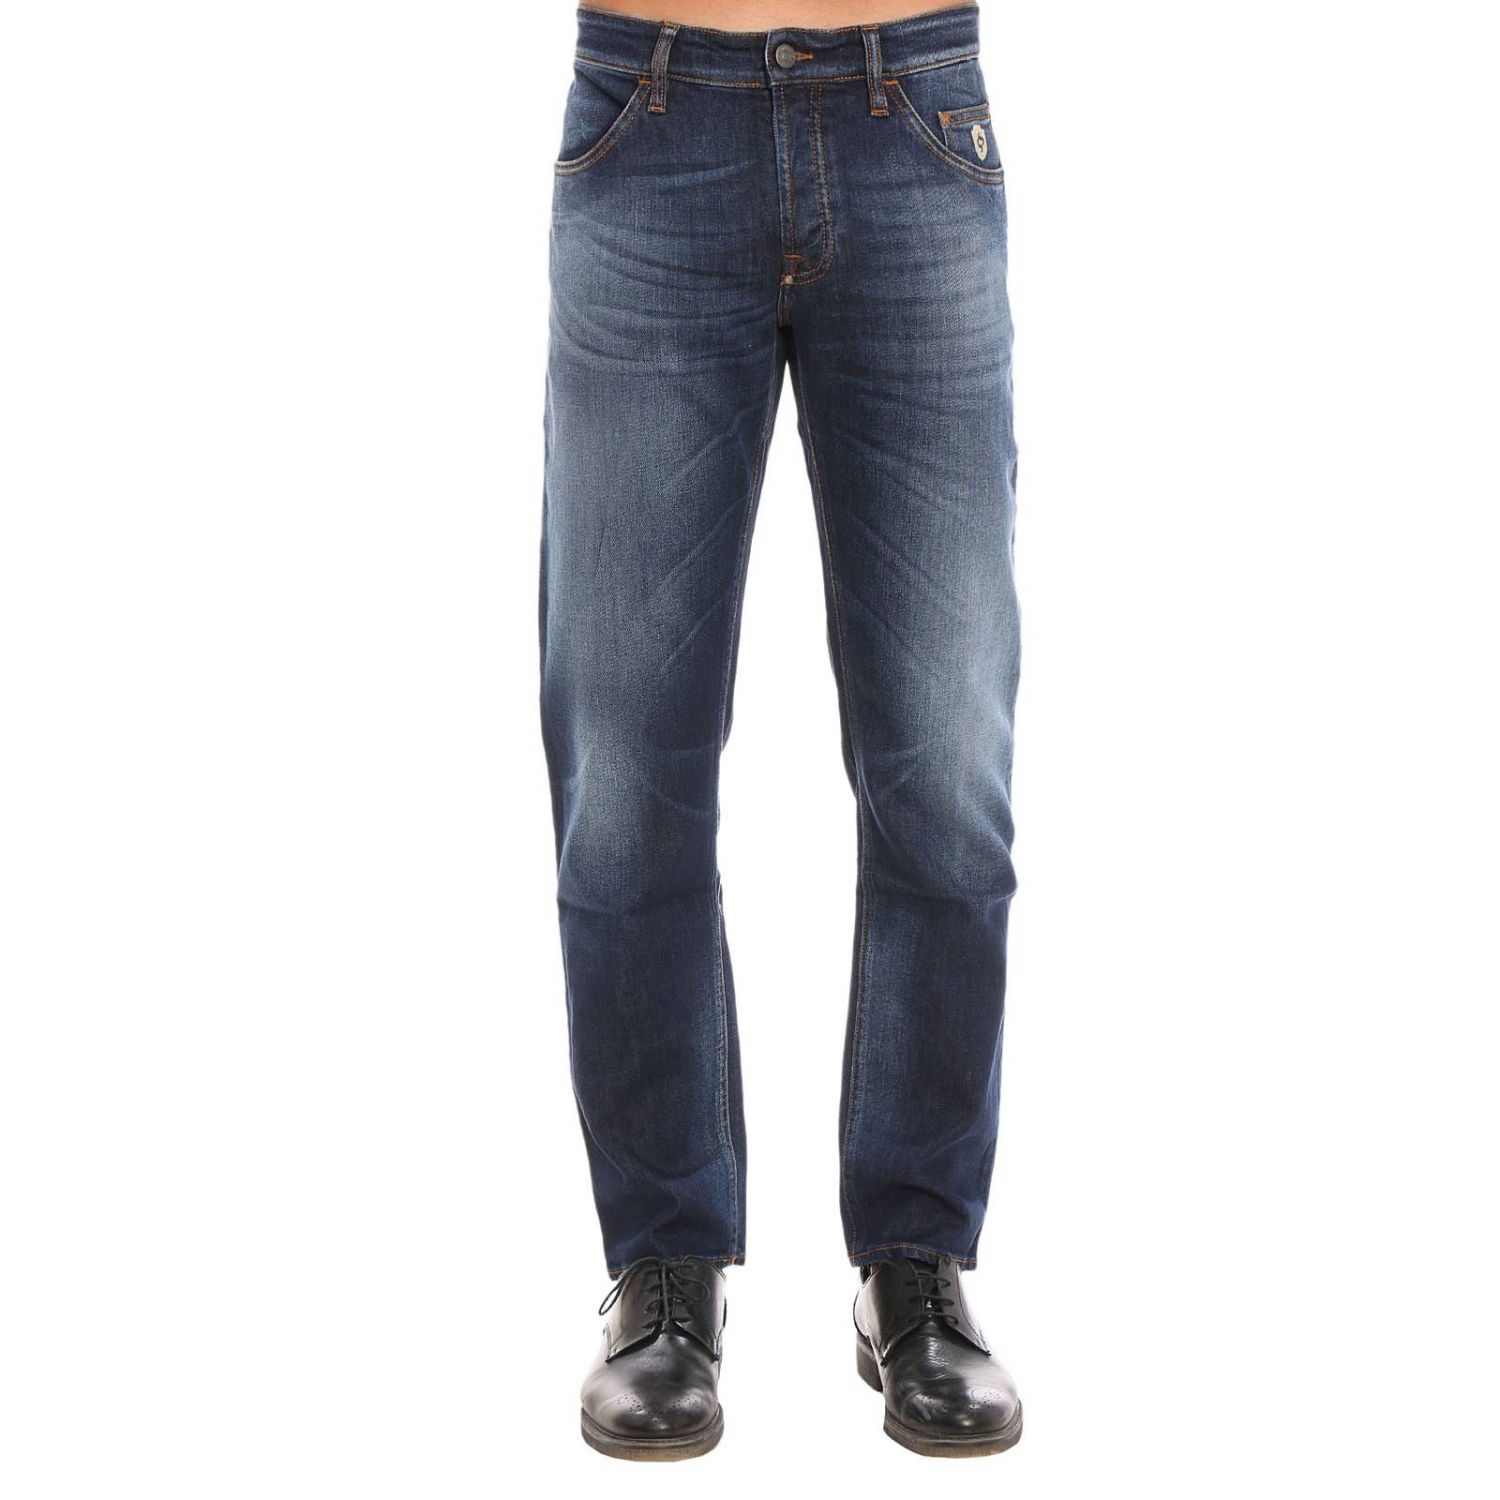 Siviglia Outlet: Jeans men - Denim | Jeans Siviglia 26M2 S404 GIGLIO.COM